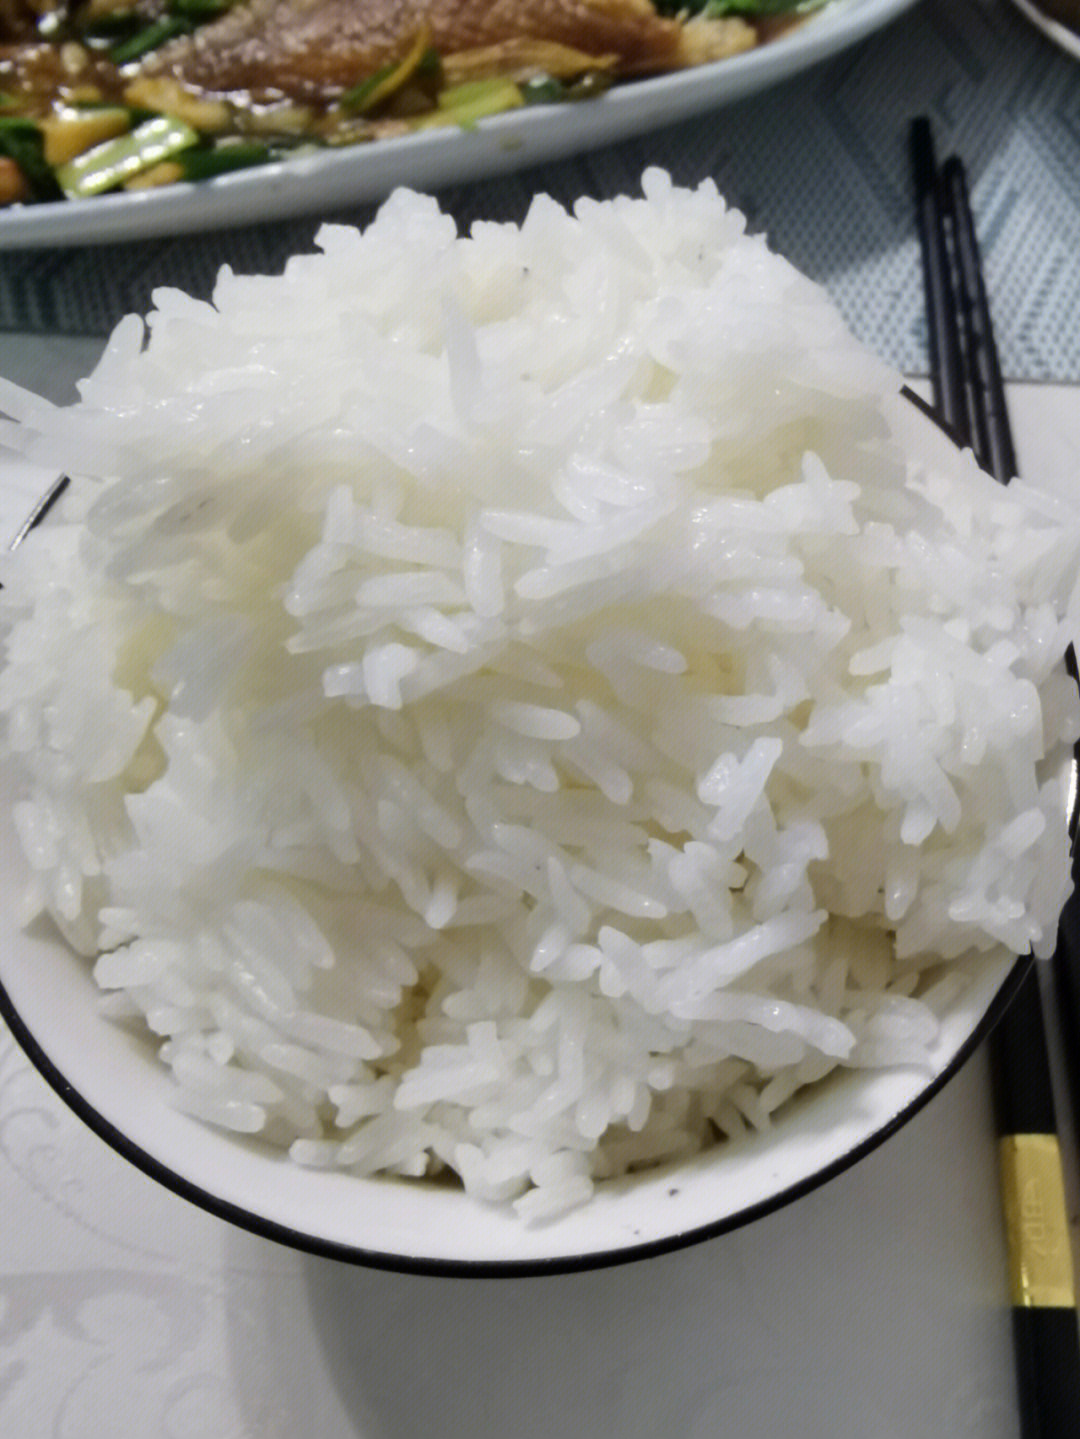 泰国米煮熟的样子图片